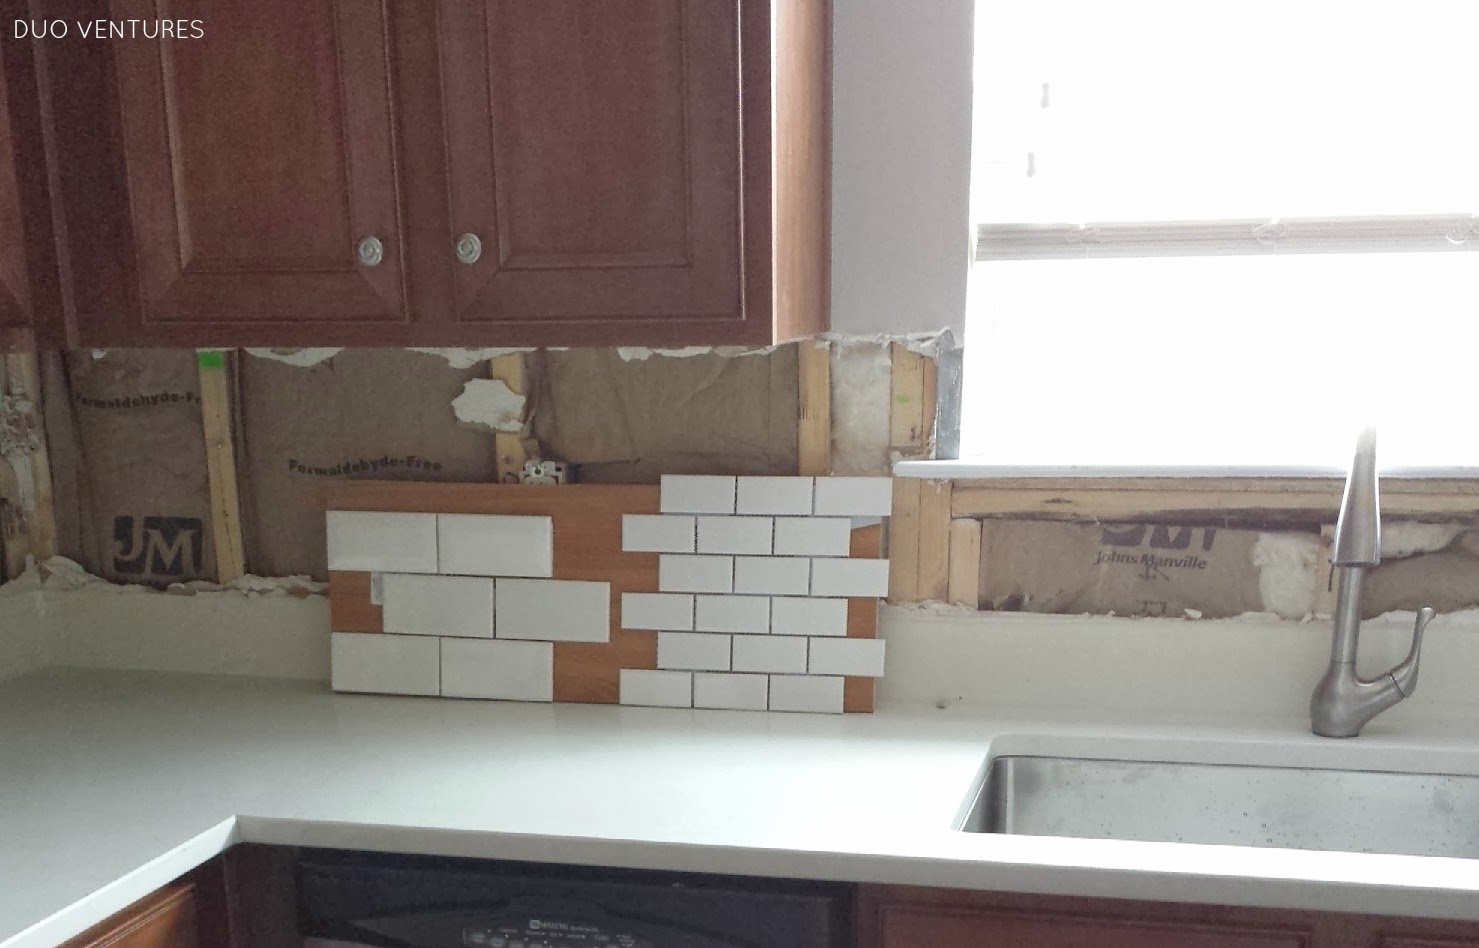 Subway Tile Backsplash Installation, What Size Subway Tile For Small Kitchen Backsplash